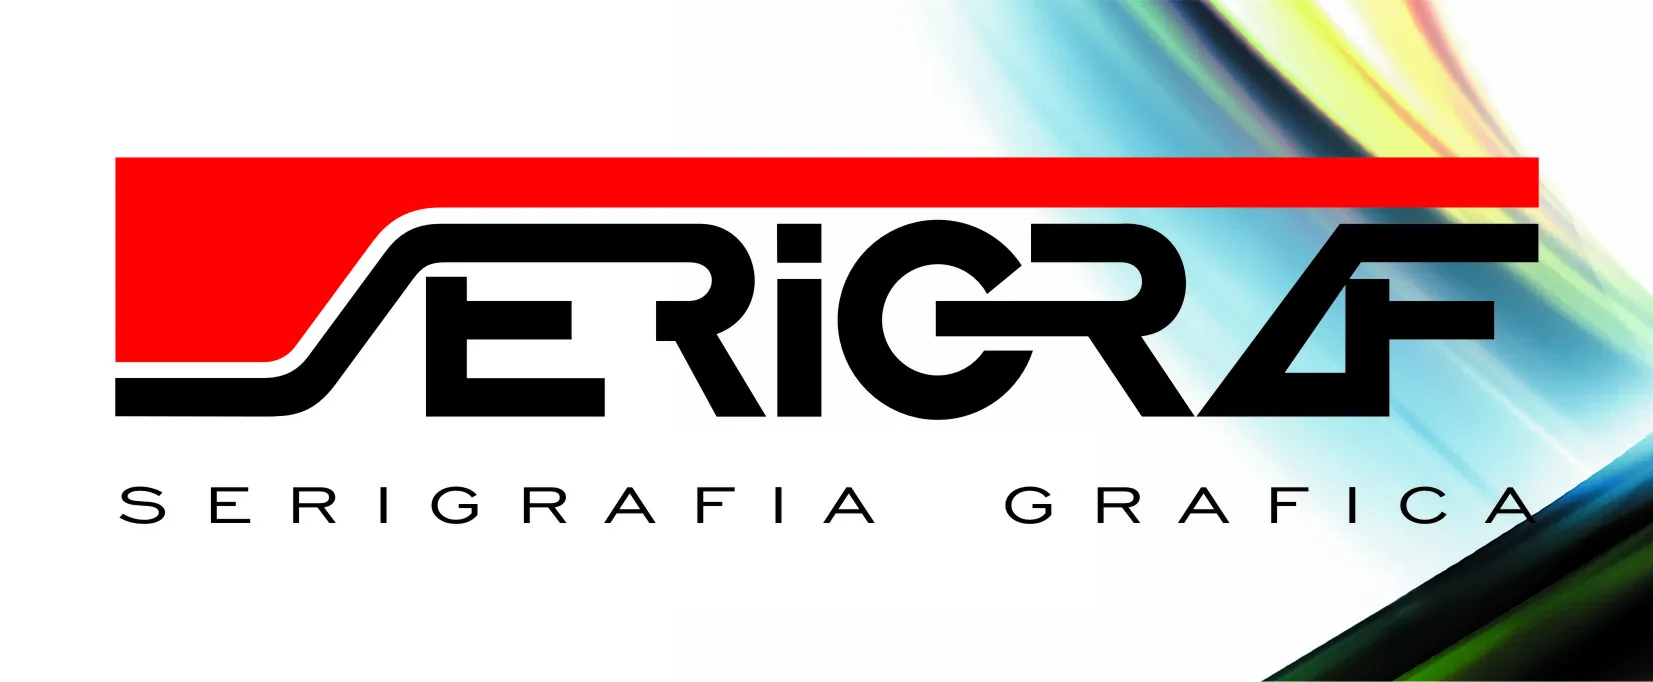 Logo Serigraf, S.A. Impresión Digital, Rotulación y Serigrafía